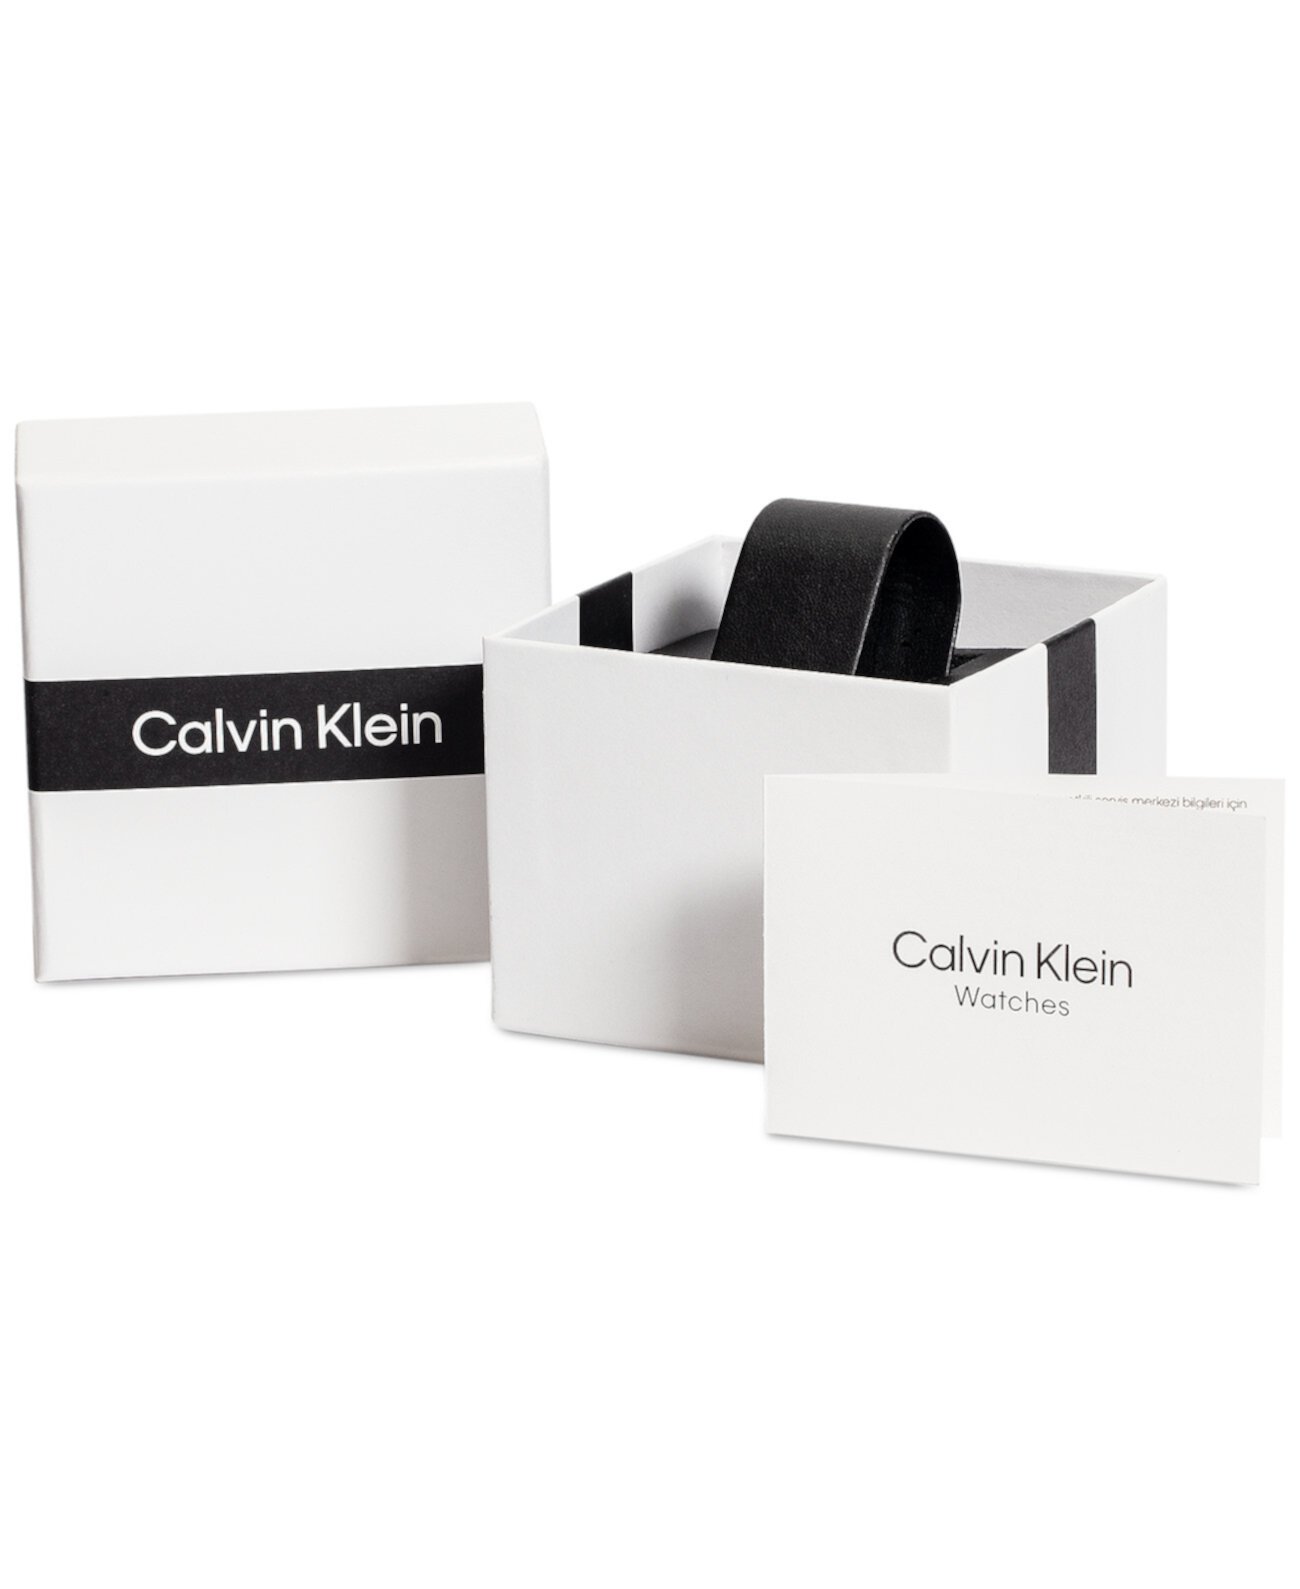 Мужские автоматические вечные часы с сетчатым браслетом из нержавеющей стали 38 мм Calvin Klein